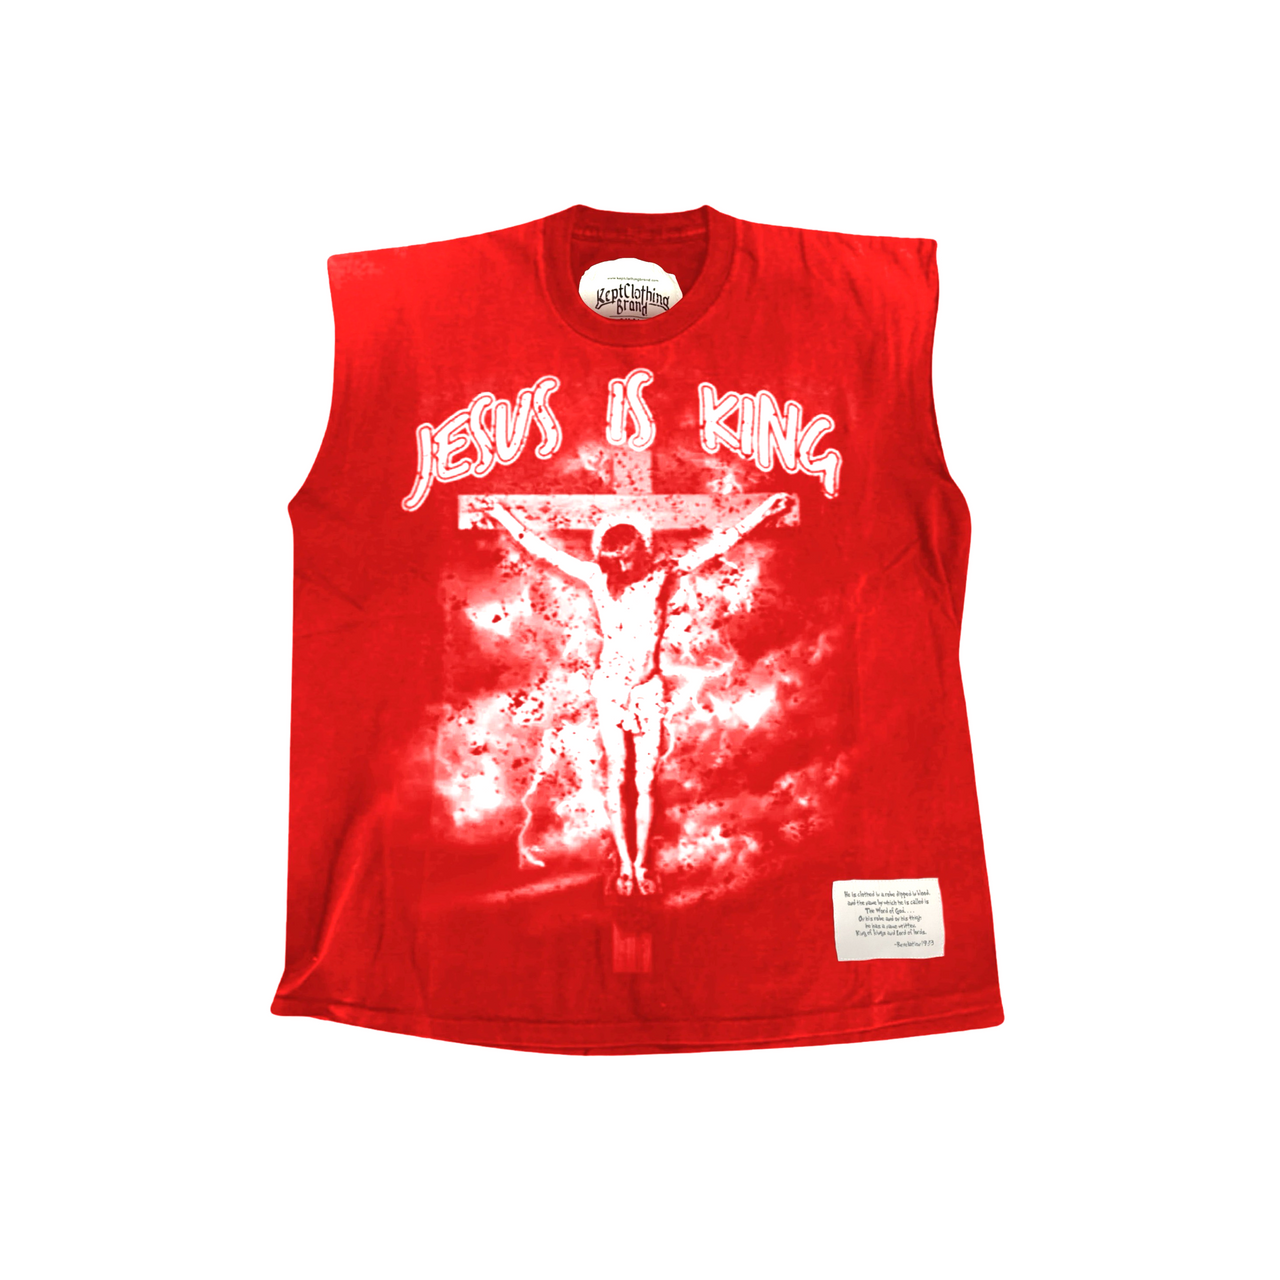 Jesus is King Muscle Tee - Vintage Red